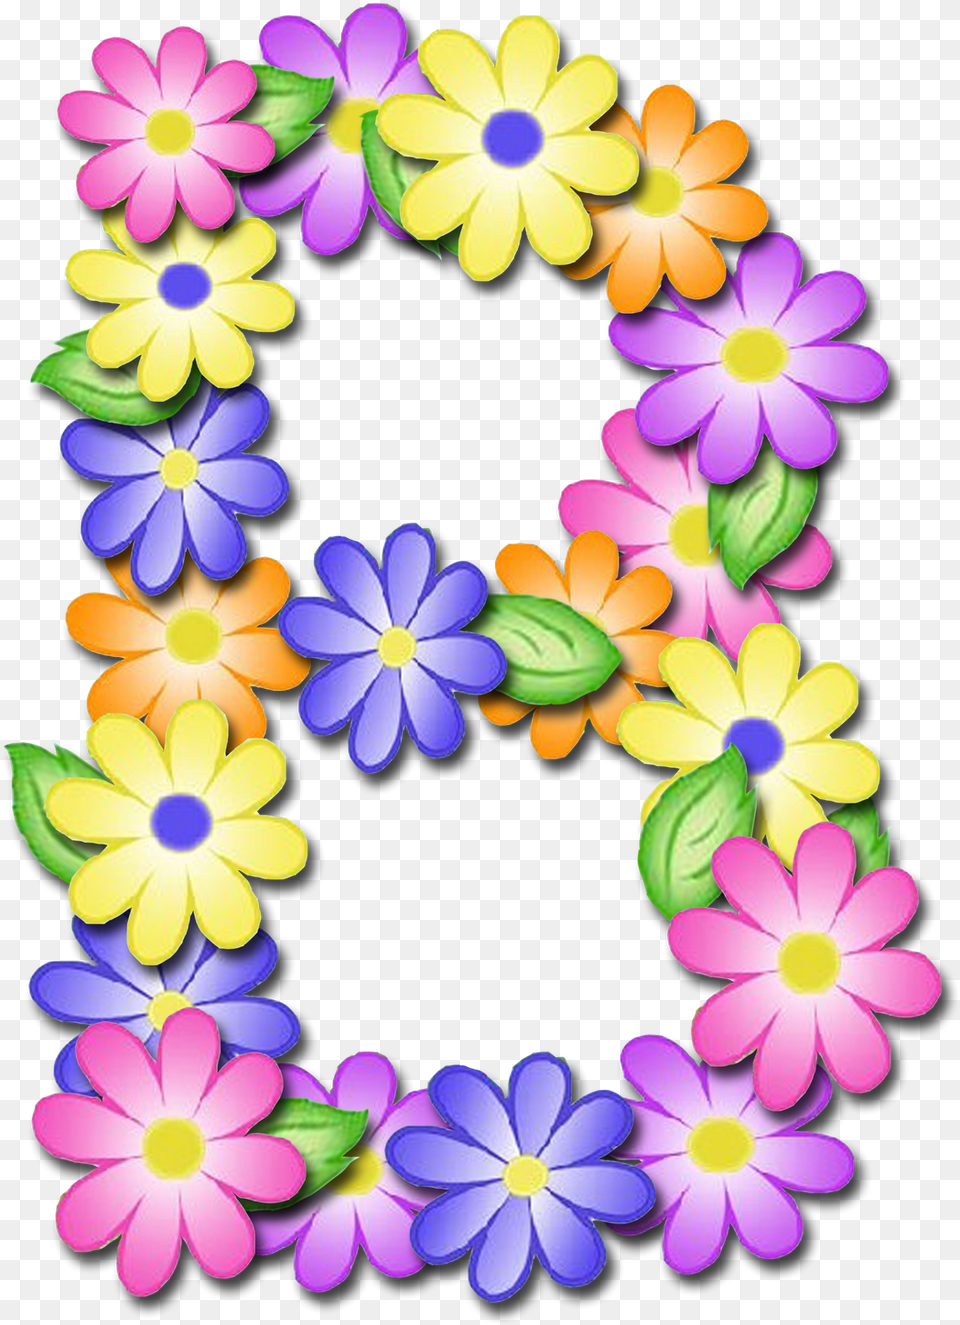 Letras De Flores P, Plant, Daisy, Flower, Purple Png